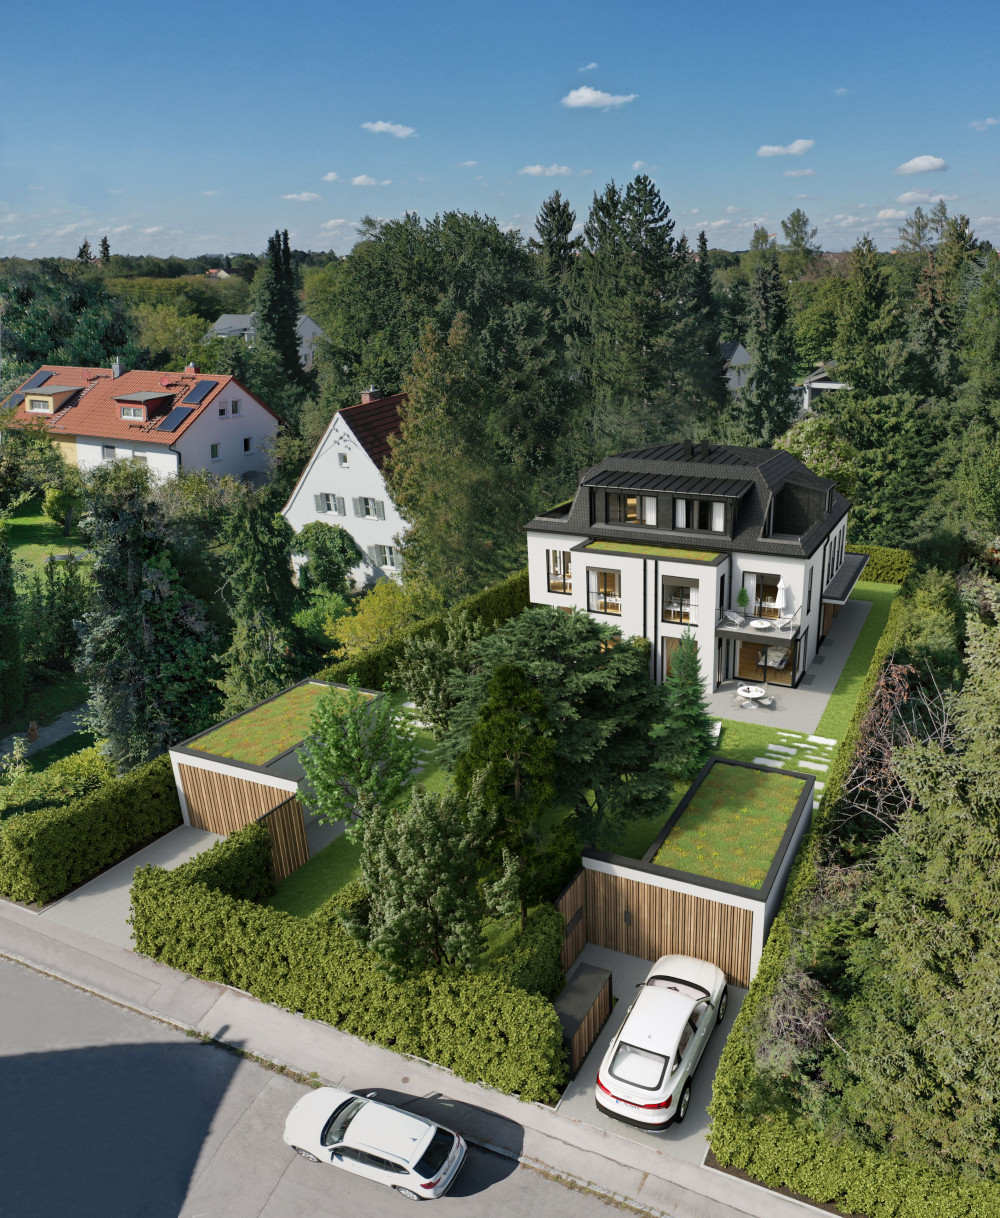 Visualisierungen verstärken Vorstellungskraft. Visualisierung eines hochwertigen Doppelhauses in München. Tauchen Sie ein in zukünftige Wohnwelten. - Fix Visuals